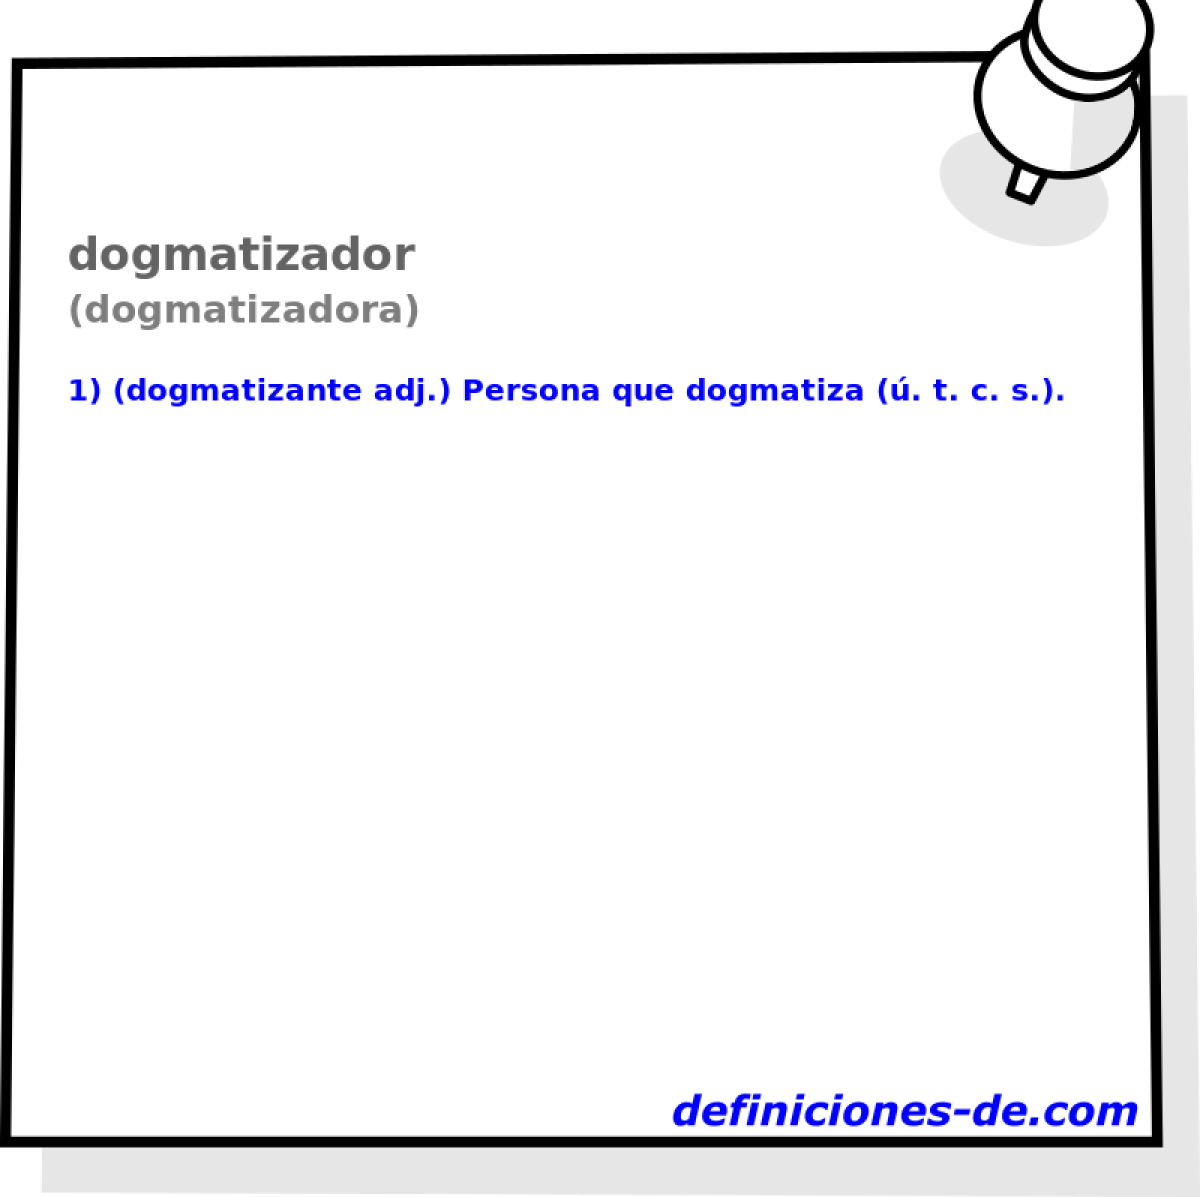 dogmatizador (dogmatizadora)